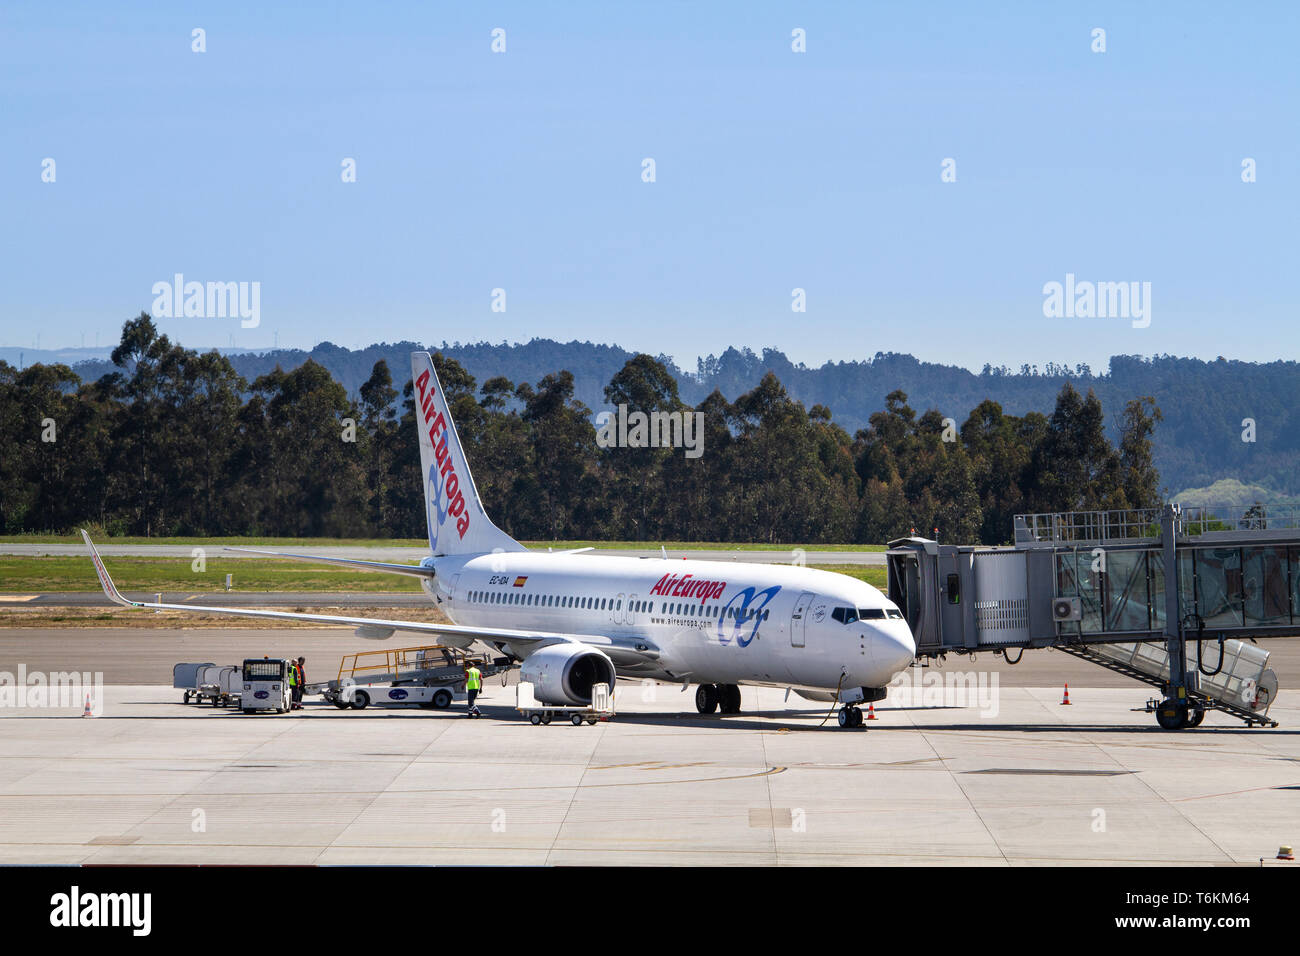 Santiago de Compostela, Spain. April 28 2019: Air Europa plane waiting for passengers at Santiago de Compostela Airport Stock Photo